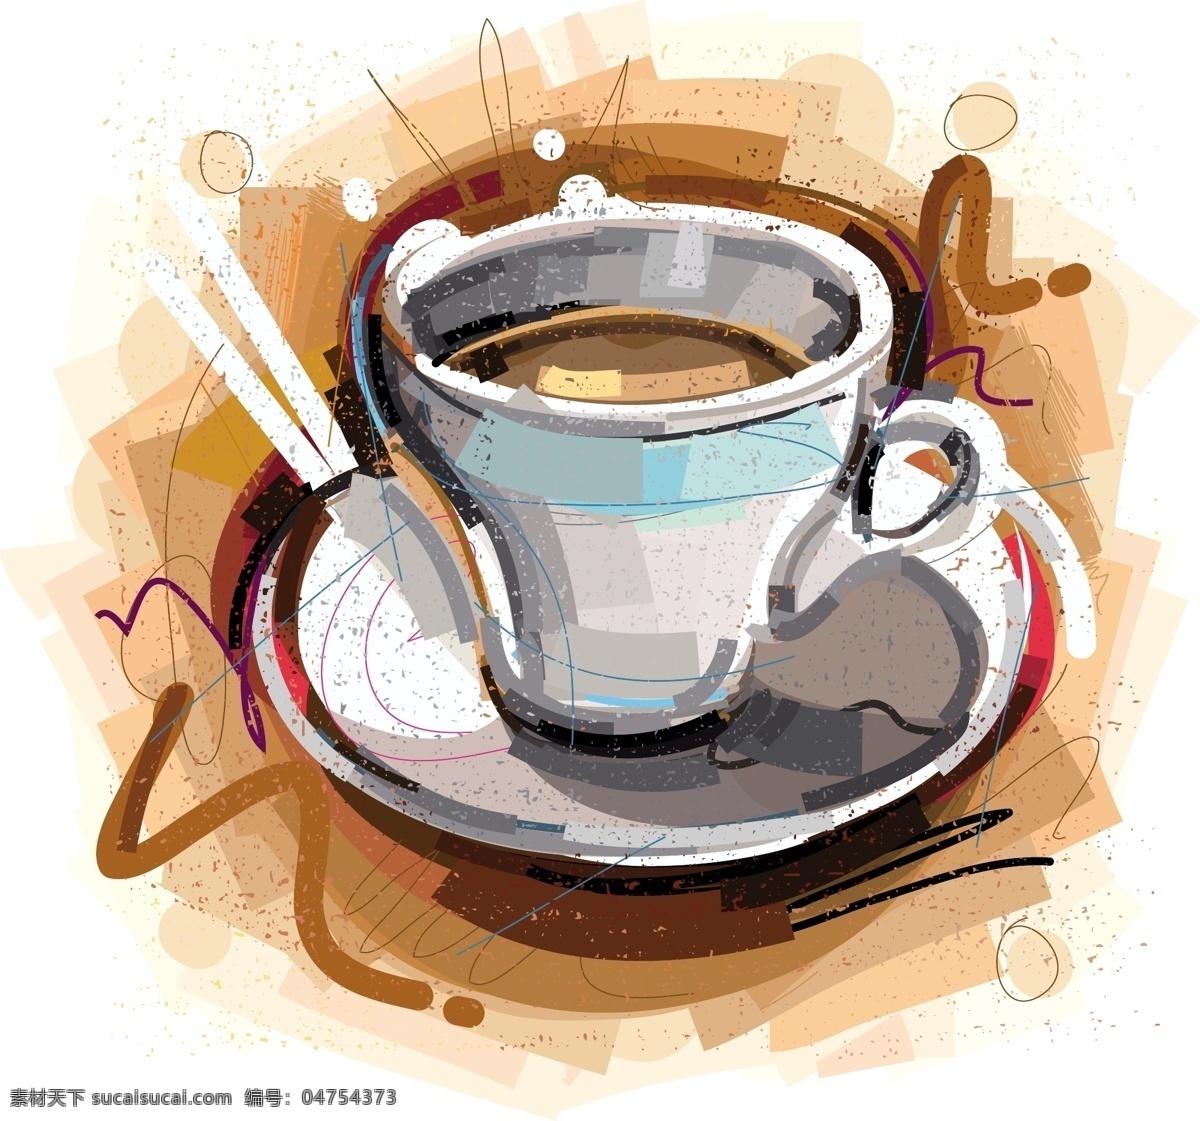 下午 茶 咖啡 现代 个性 涂鸦 矢量 咖啡色 水彩 彩色 手绘 创意